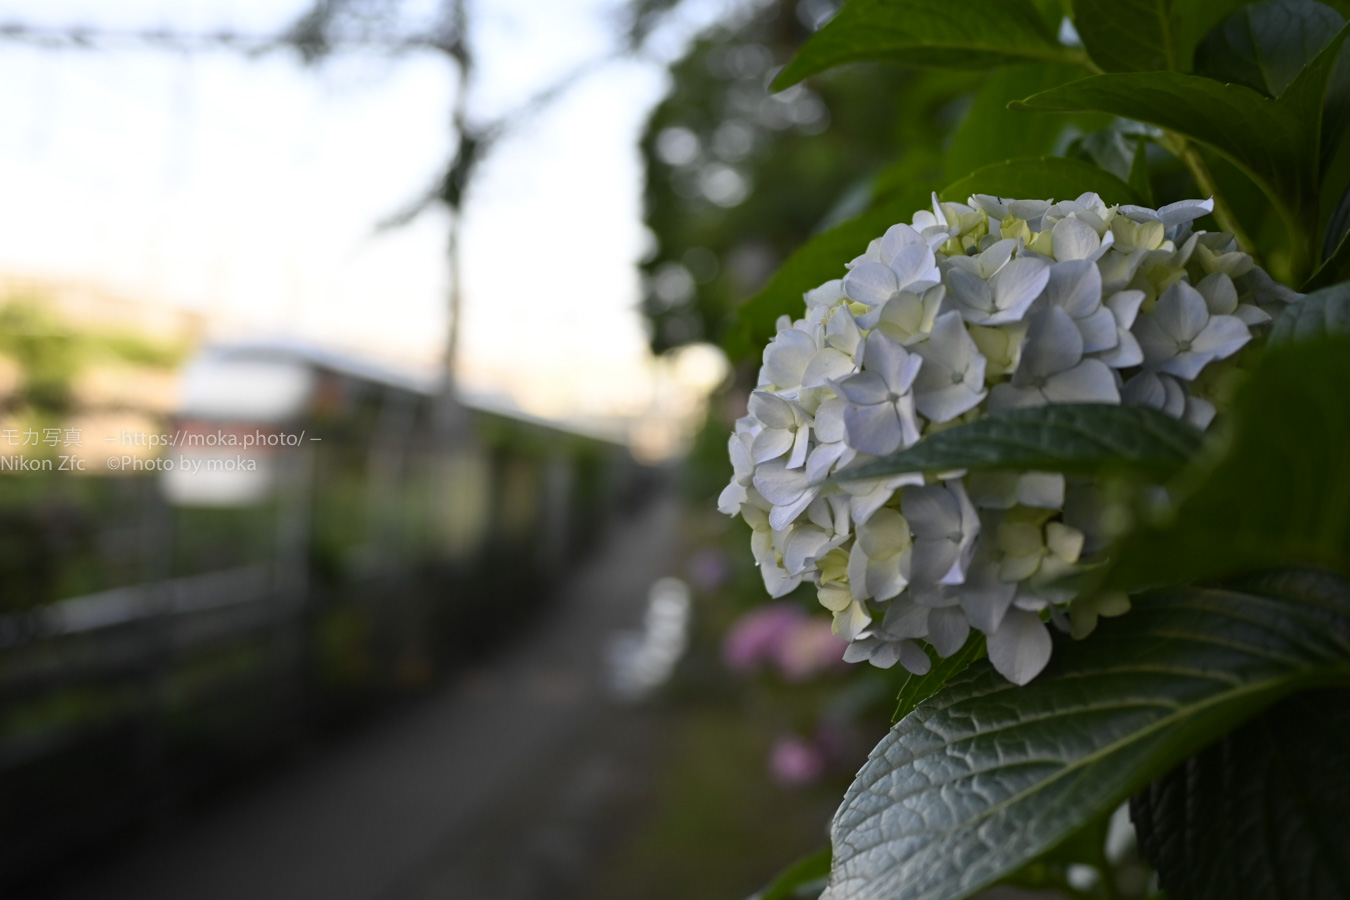 【スナップ撮影】紫陽花の咲く一本道